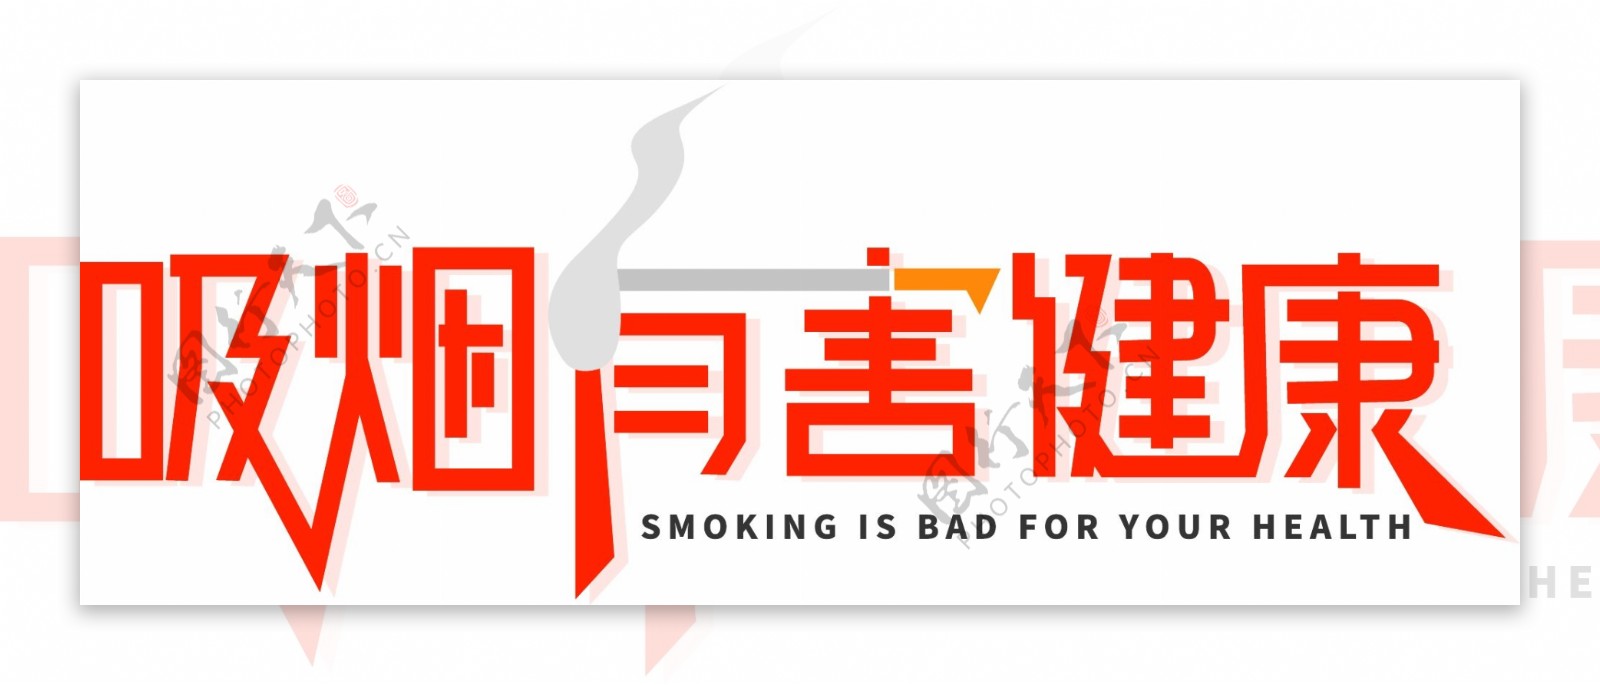 吸烟有害健康字体设计